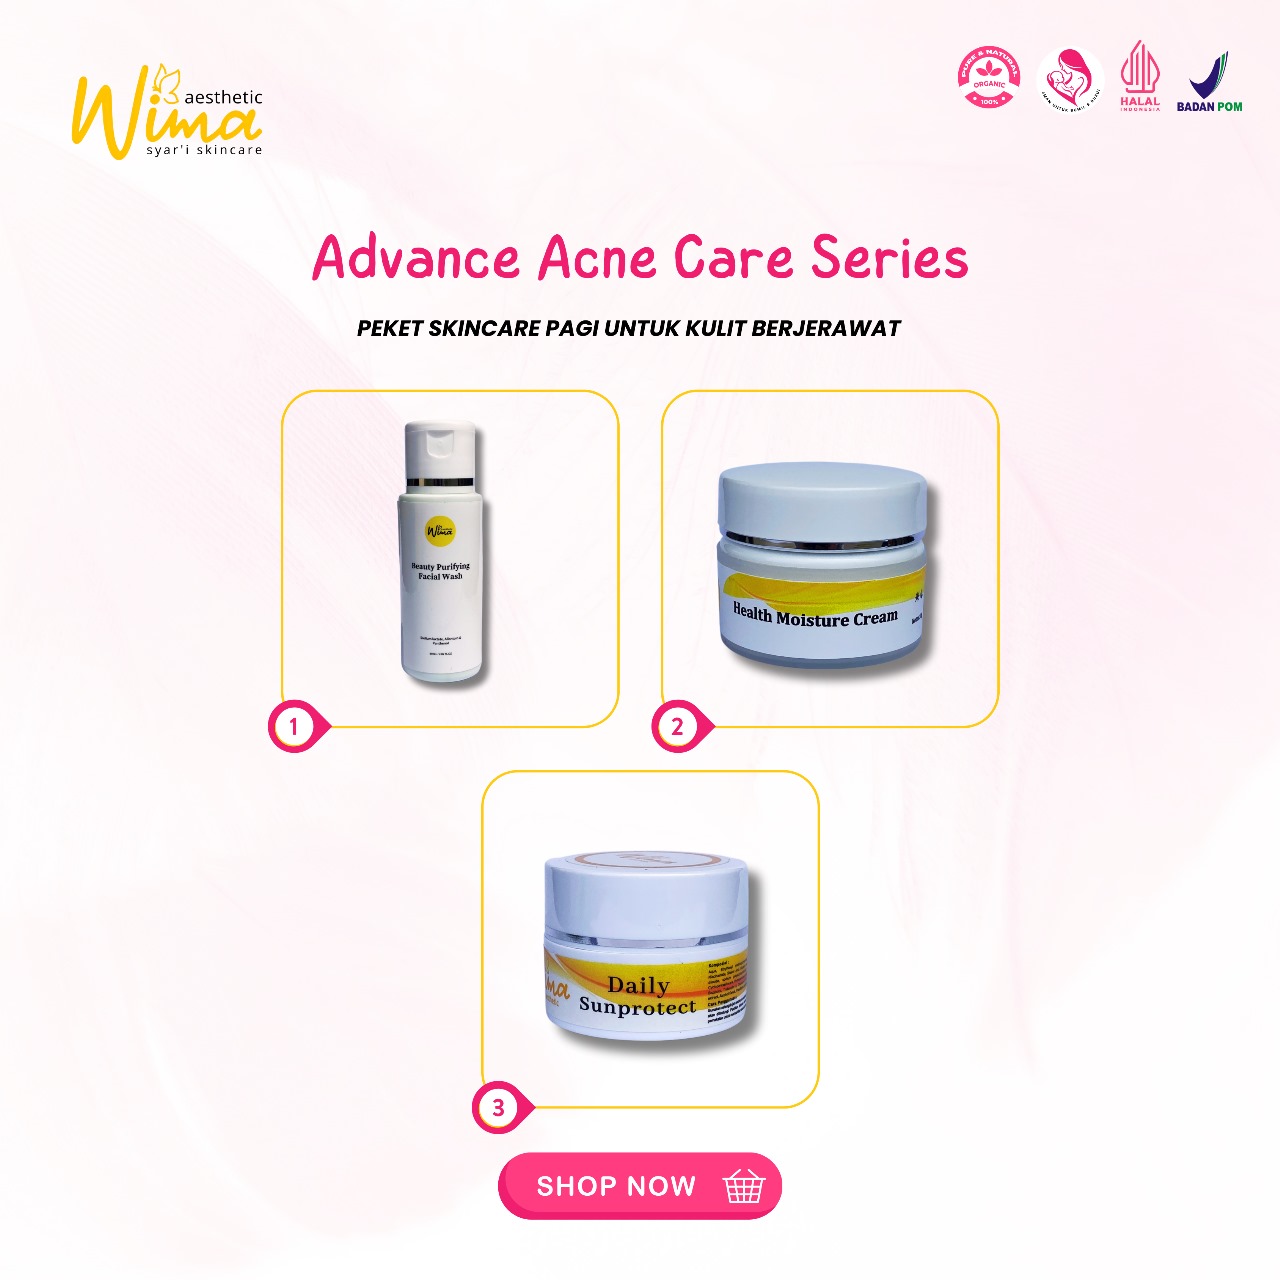 Advance Acne Care Series